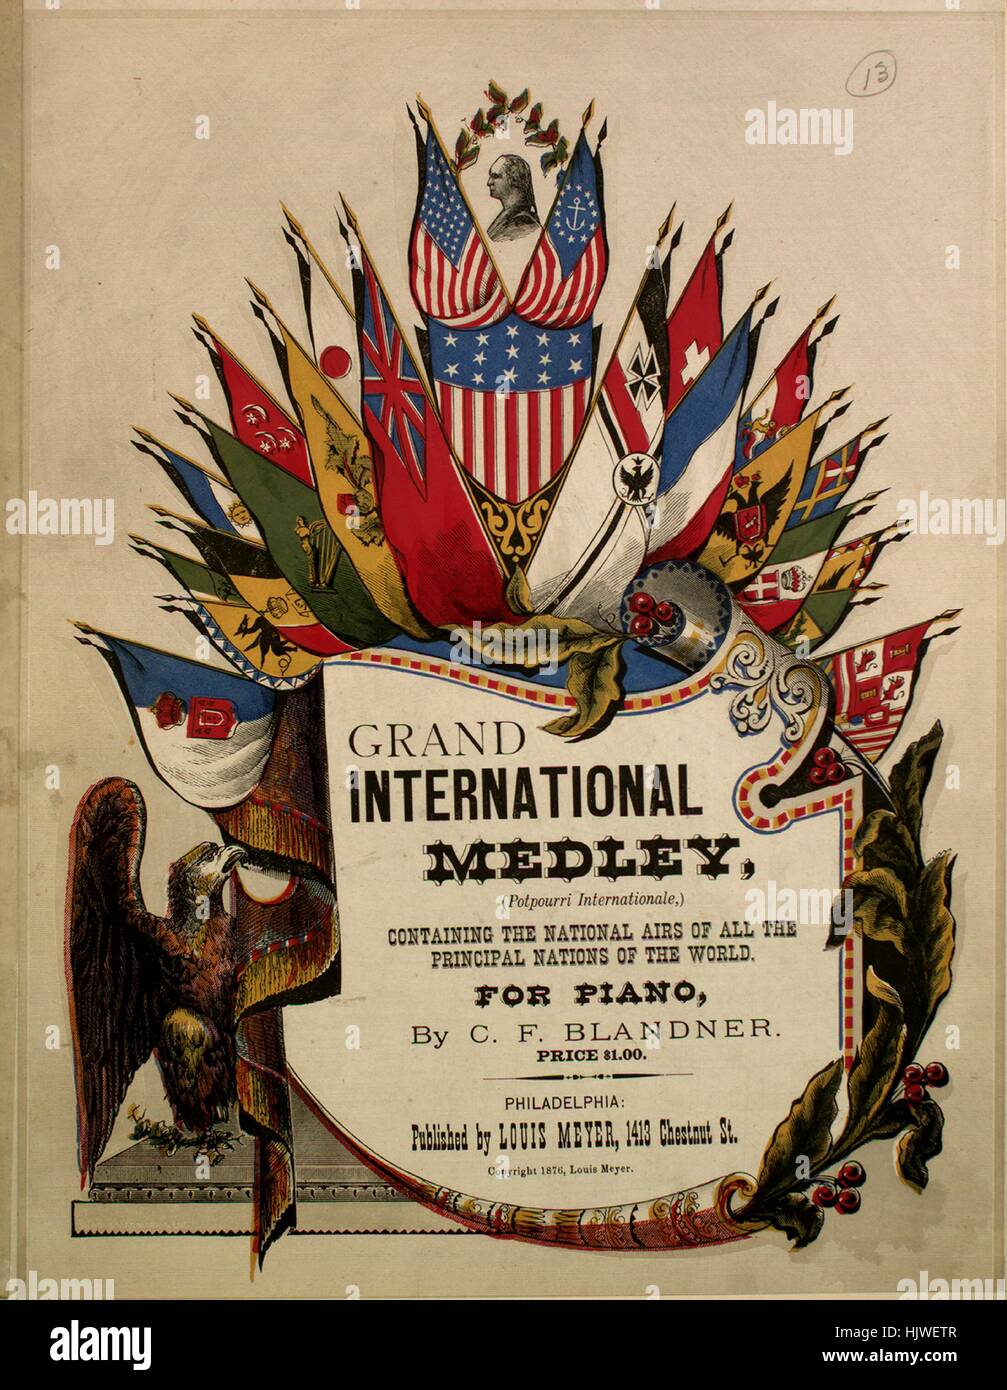 Sheet Music image de couverture de la chanson 'Grand International Medley ( pot-pourri Internationale) contenant les airs nationaux de toutes les  principales nations du monde", avec les notes de l'auteur original par  Blandner